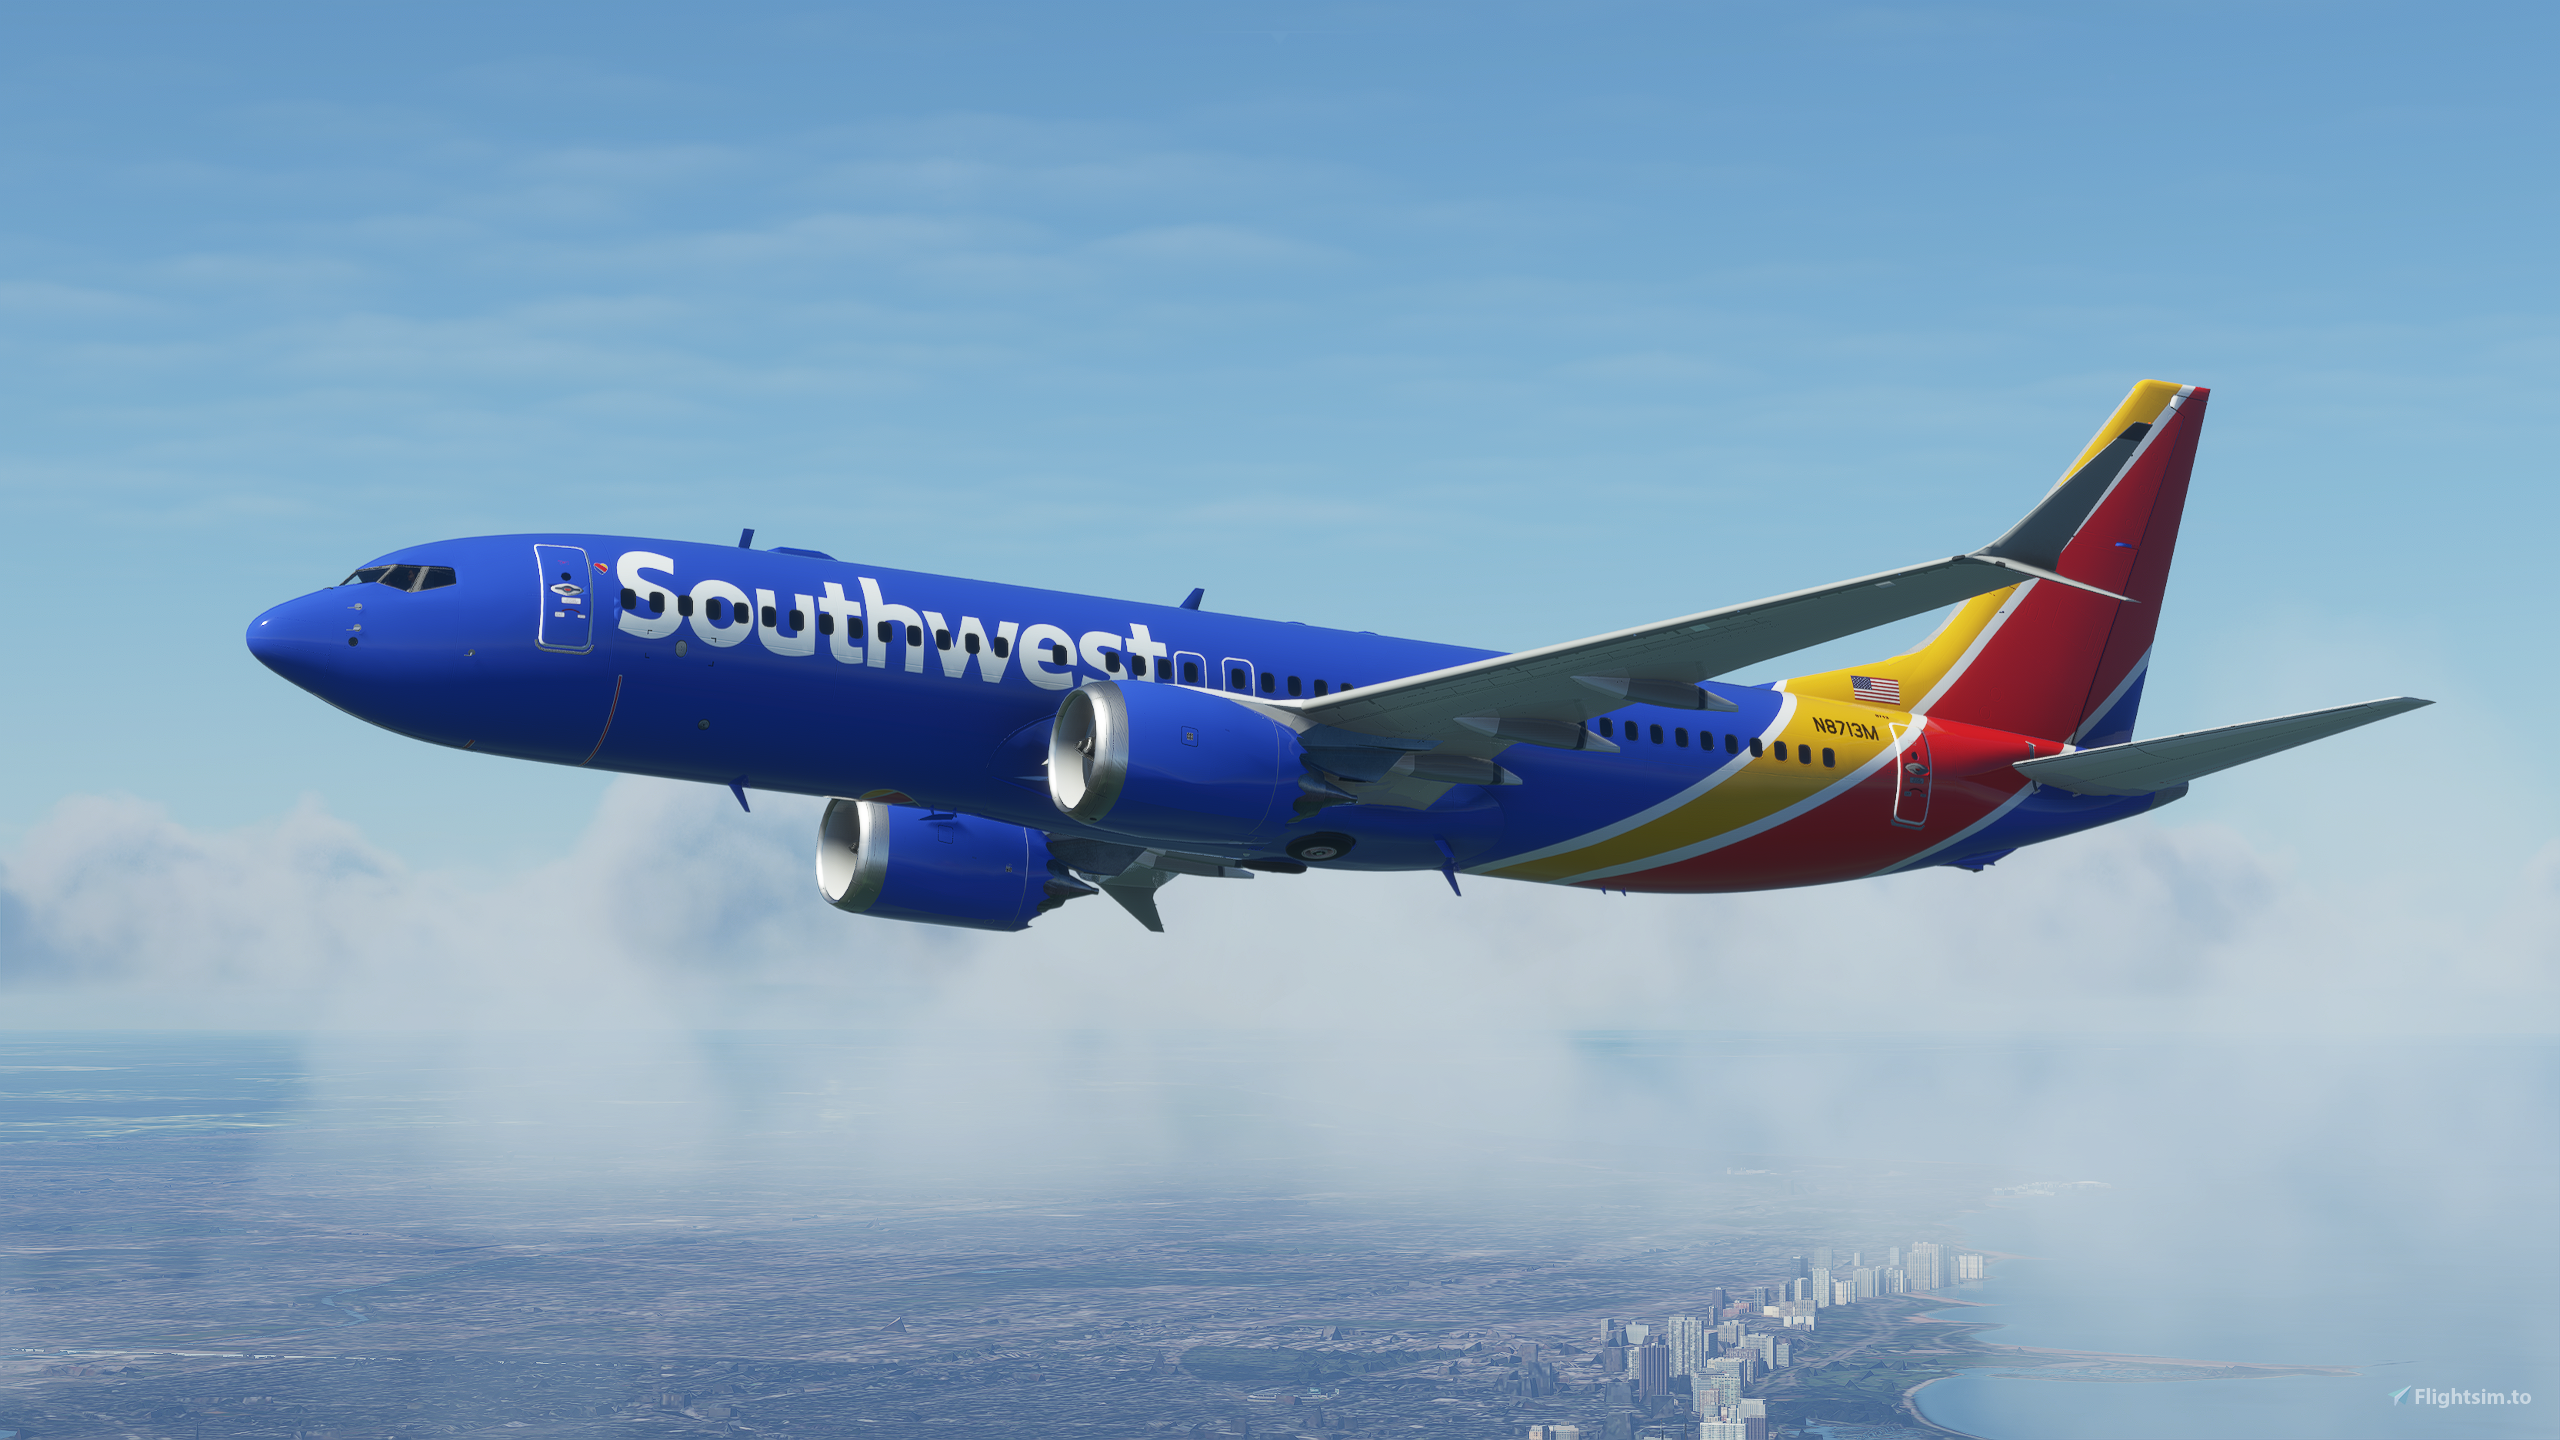 pmdg 737-800 southwest livery